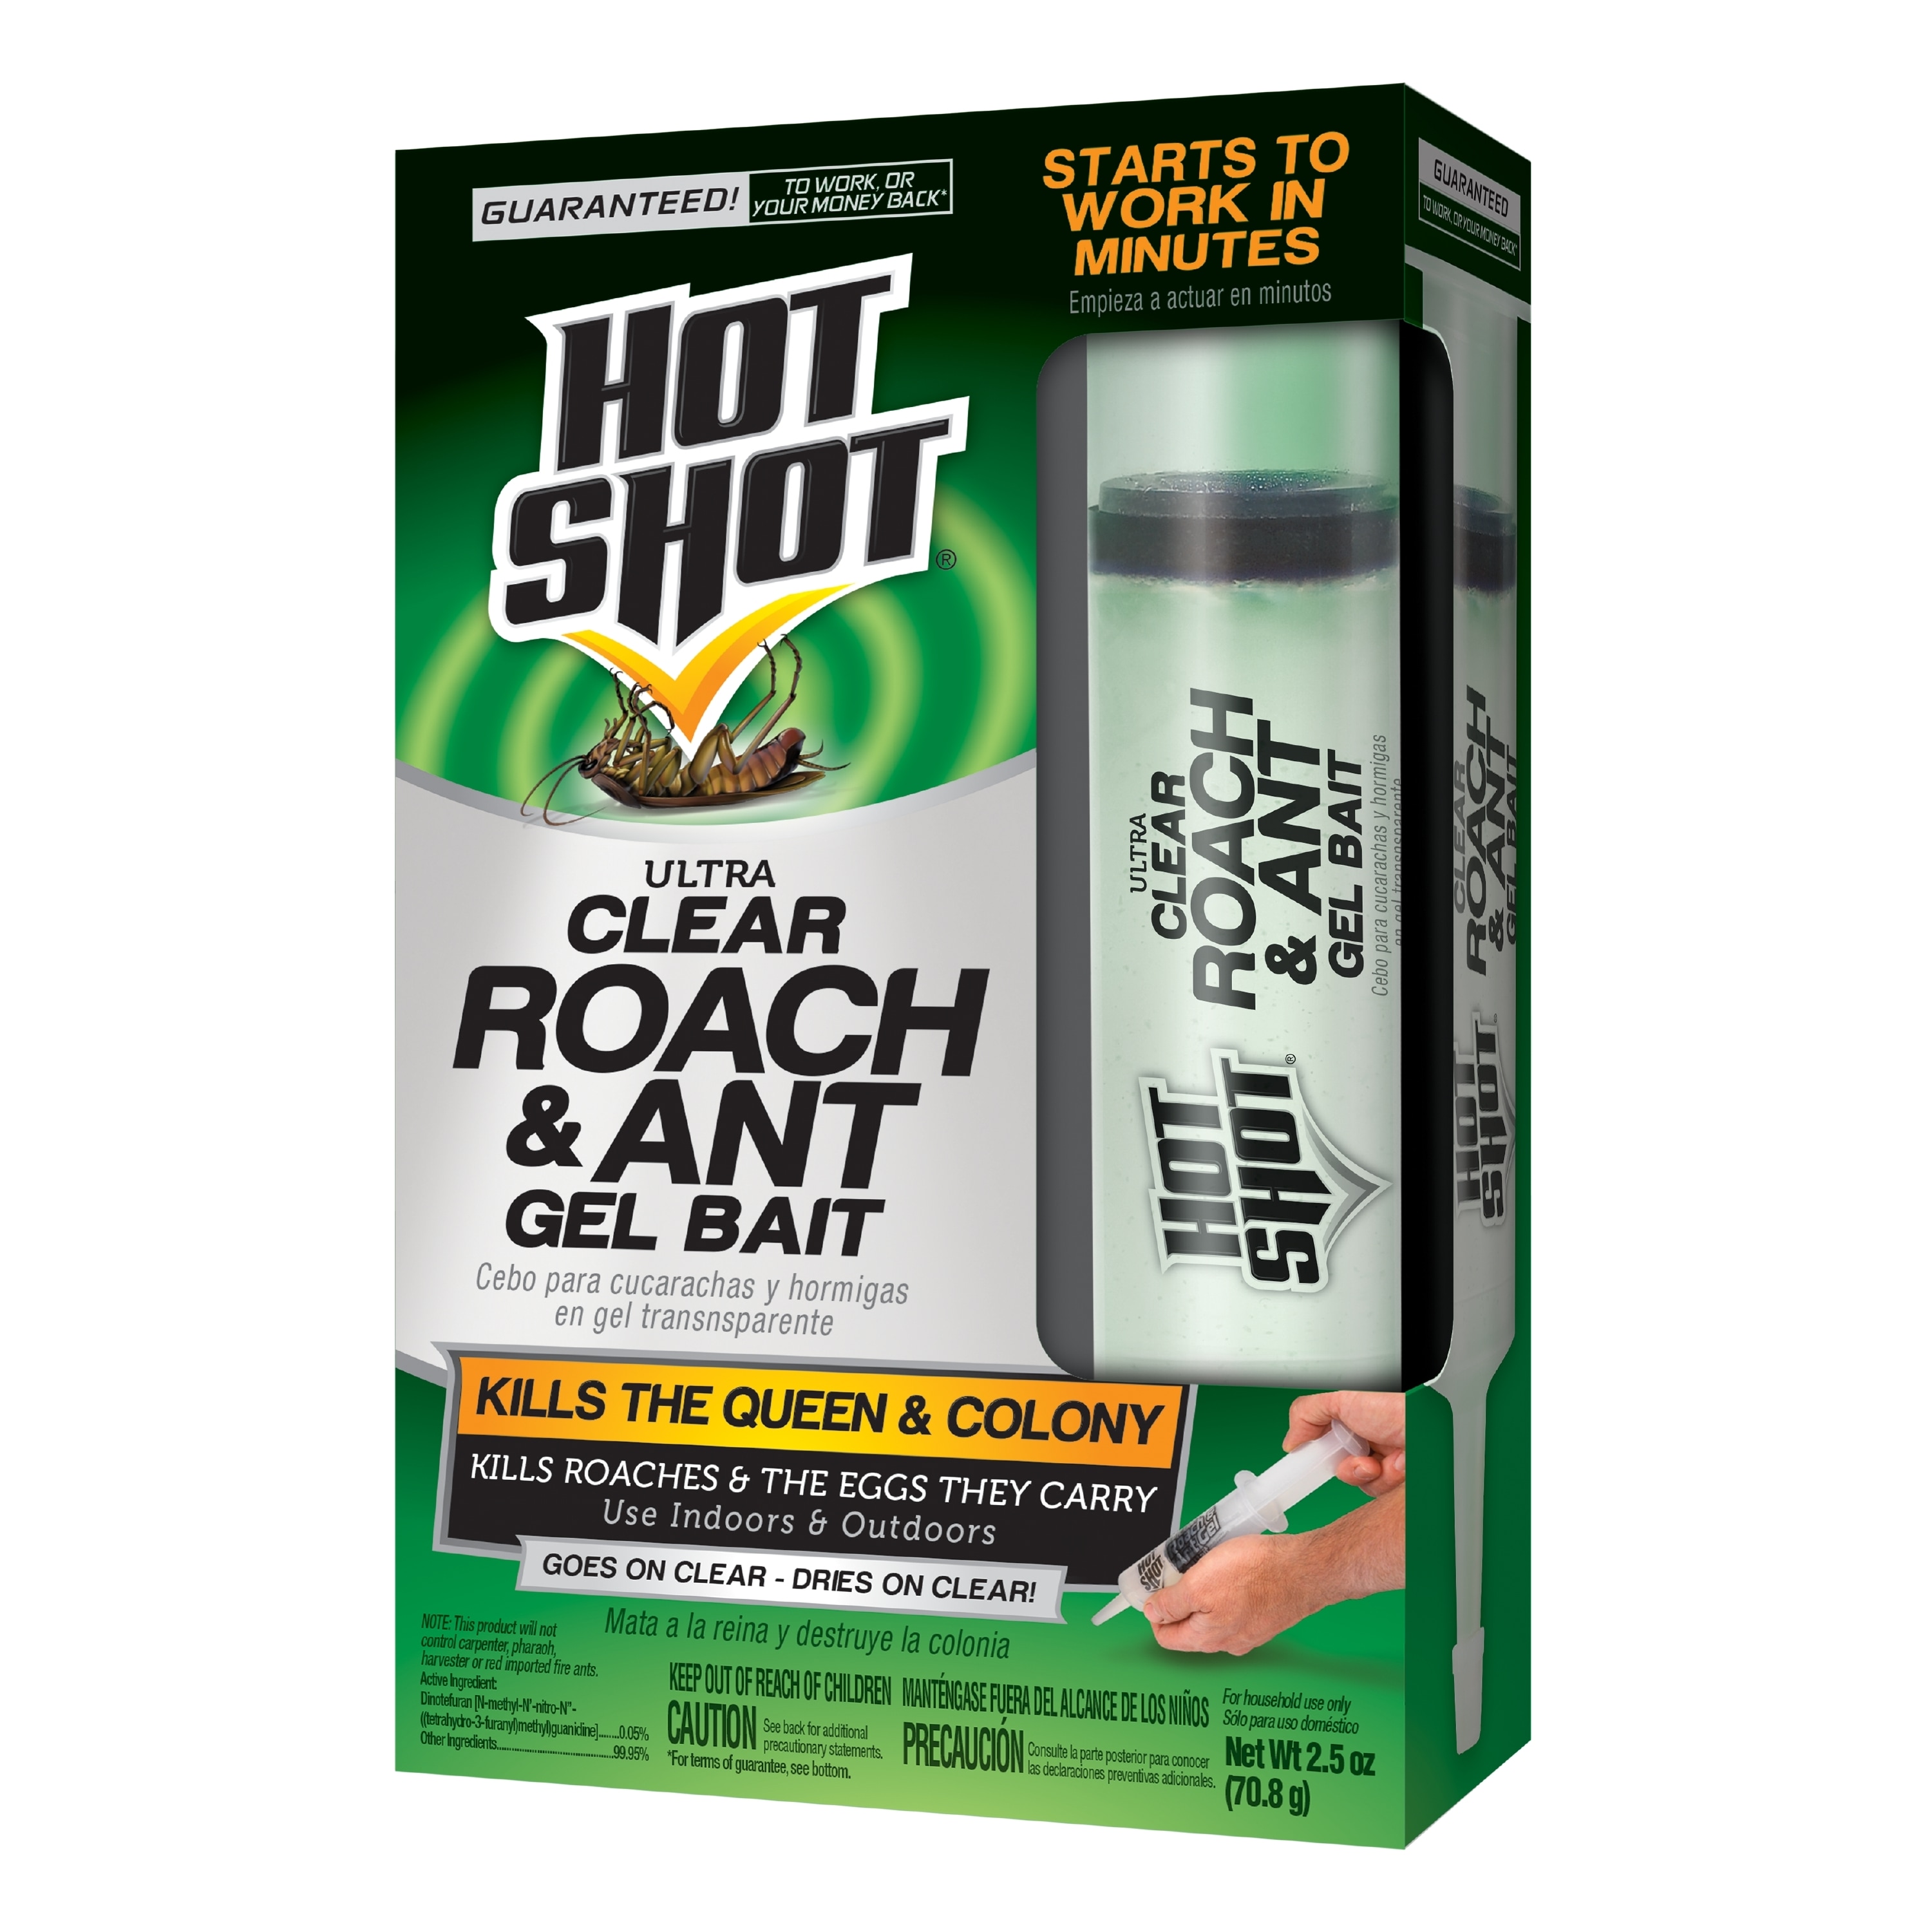 Hot Shot Ant Bait, Ultra, Liquid - 4 pack, 0.45 fl oz bait stations